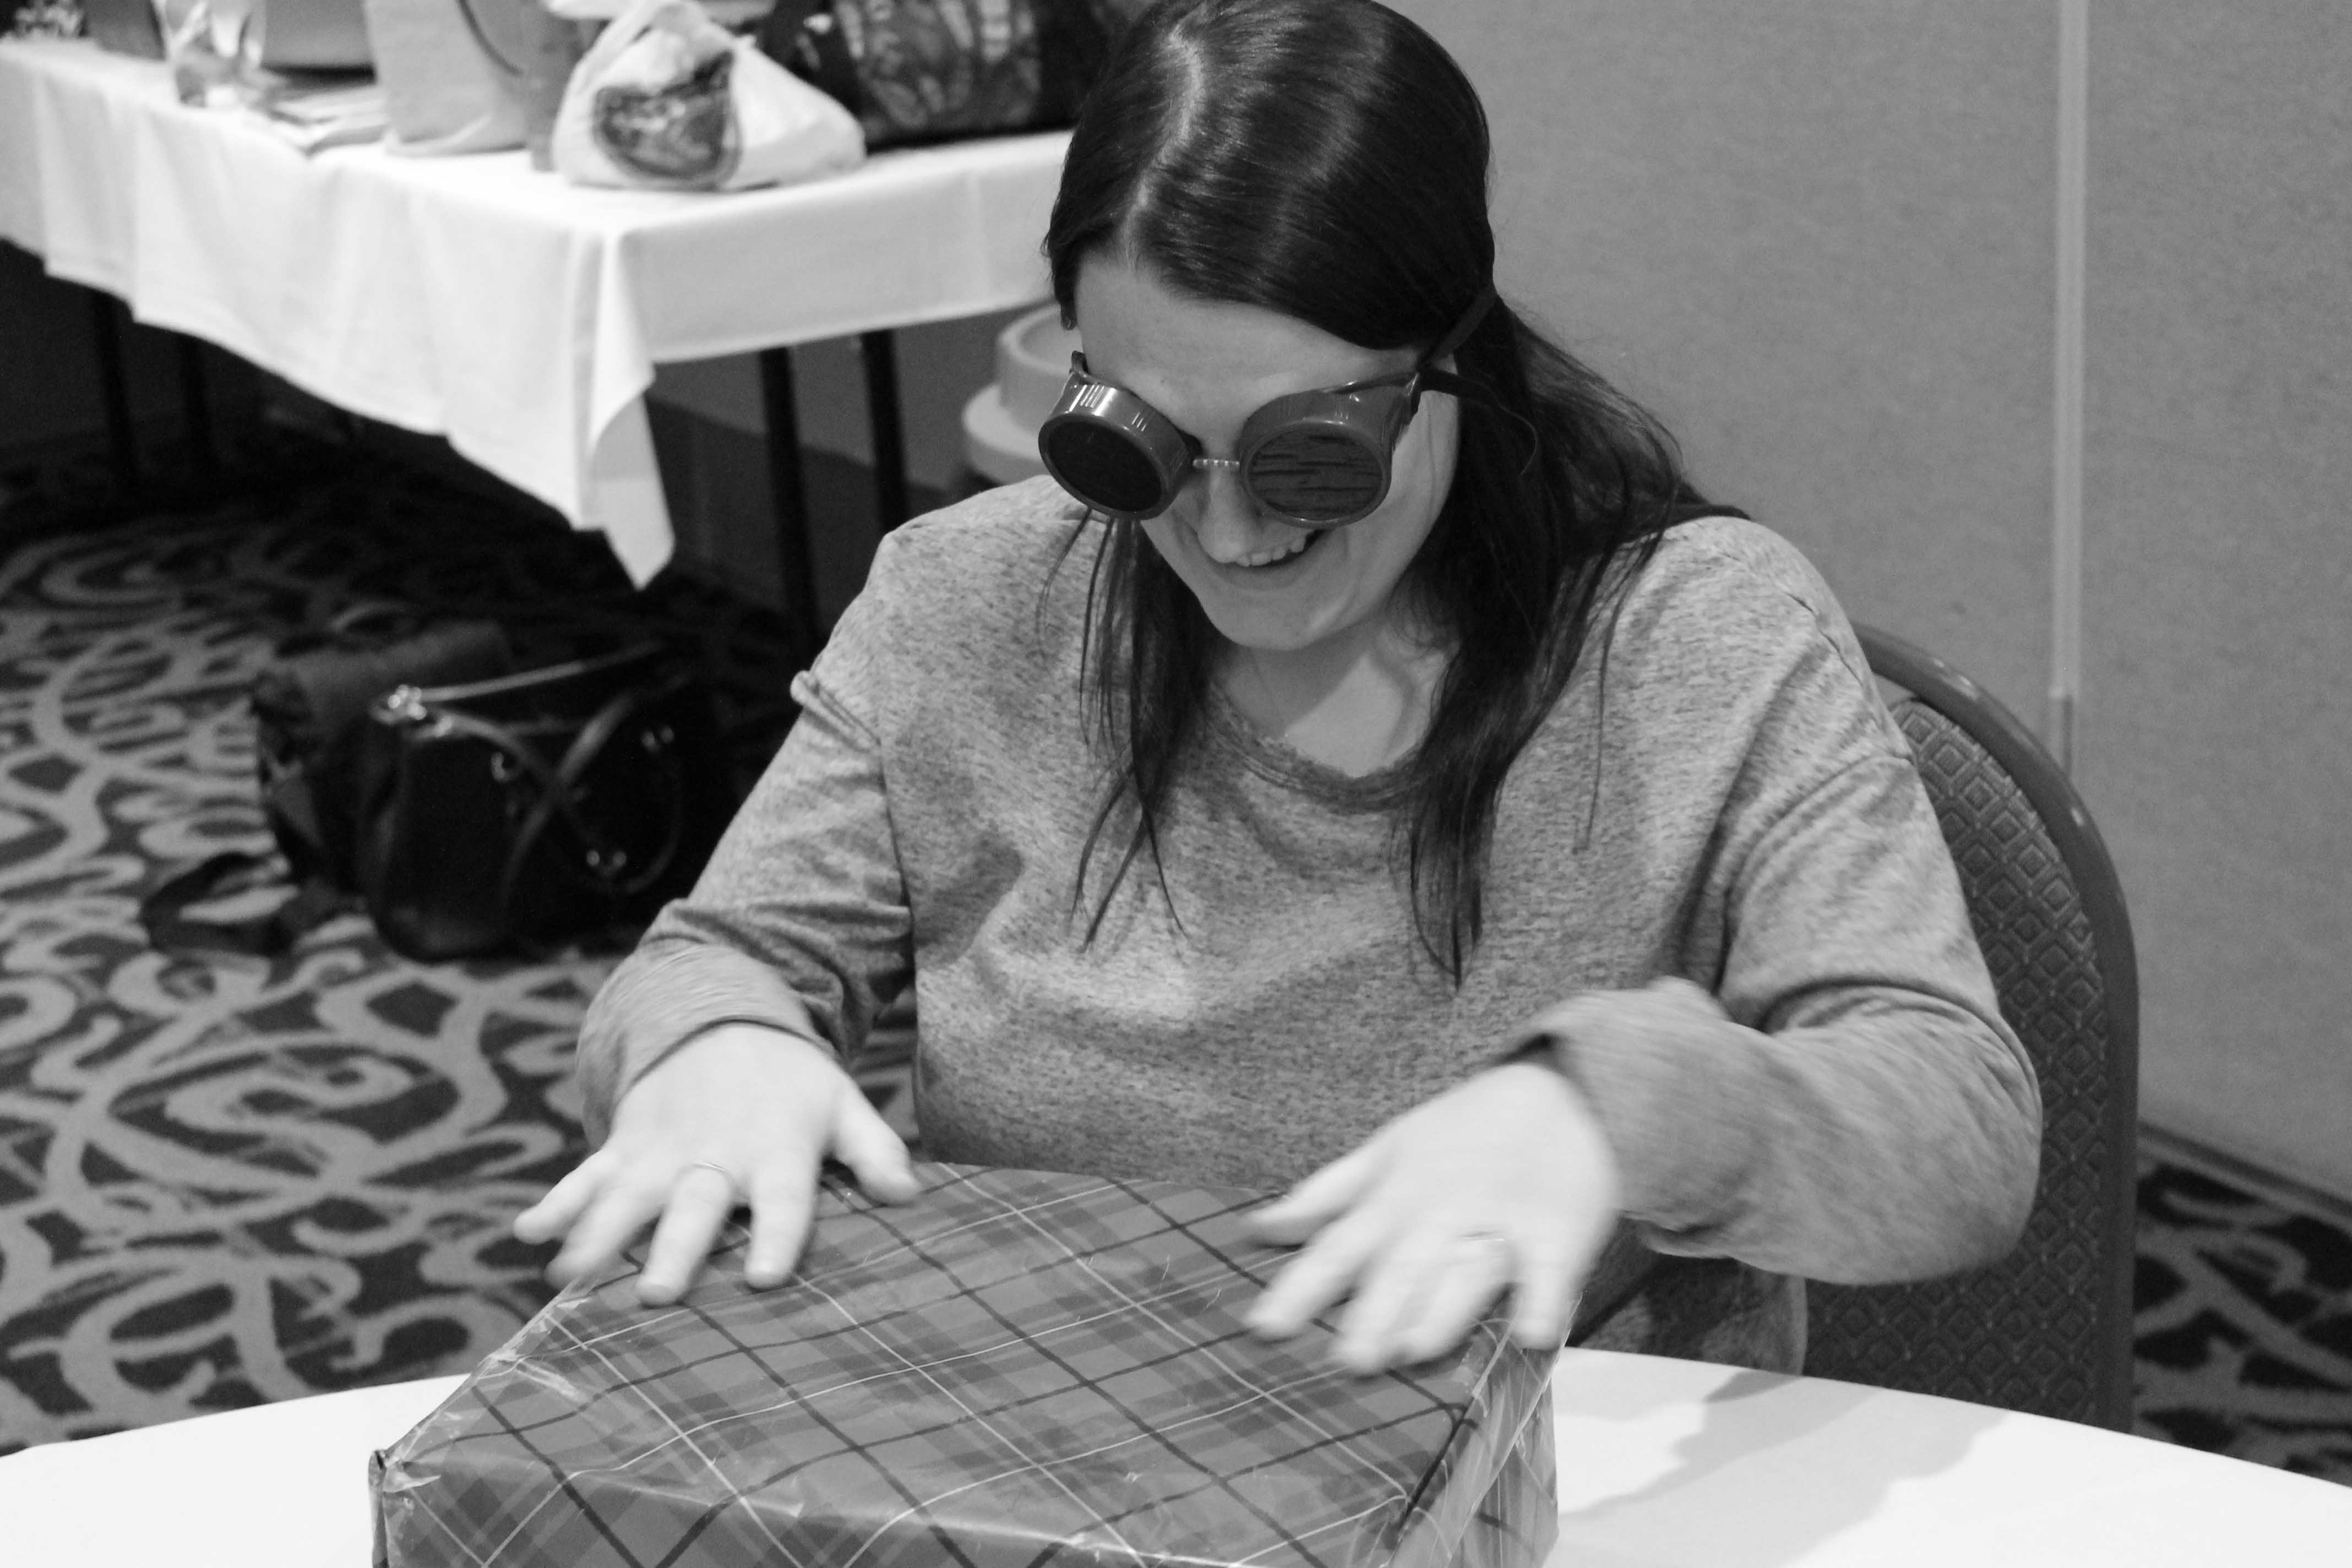 Une photo en noir et blanc d’une jeune femme assise à une table durant un exercice de formation par simulation. Elle porte des lunettes de simulation et manipule un « cadeau » carré, emballé dans du papier à motifs.